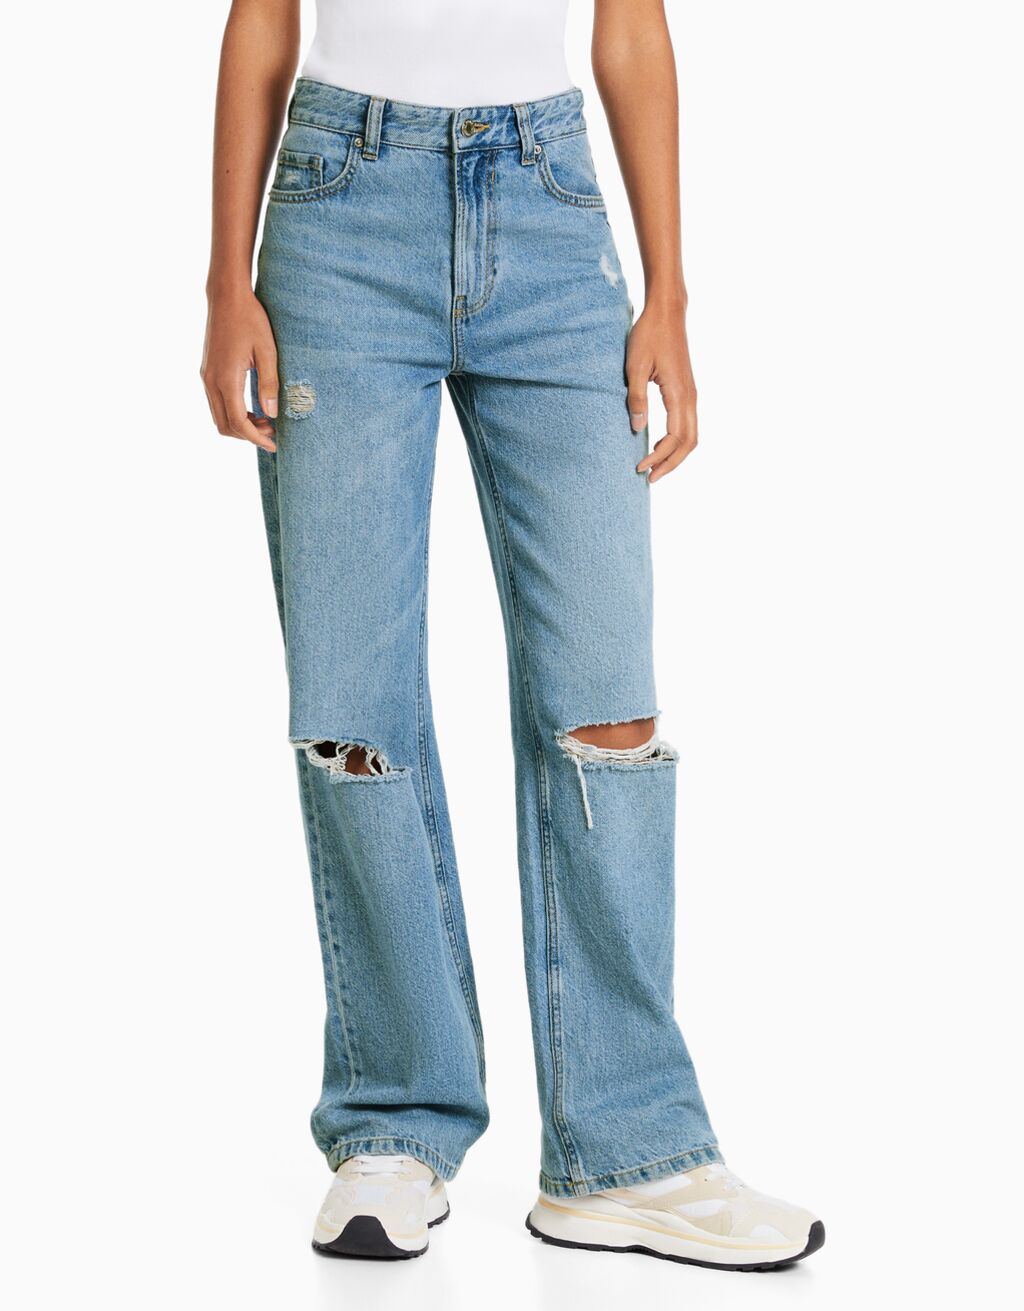 ג'ינס wide leg עם קרעים בסגנון שנות ה-90